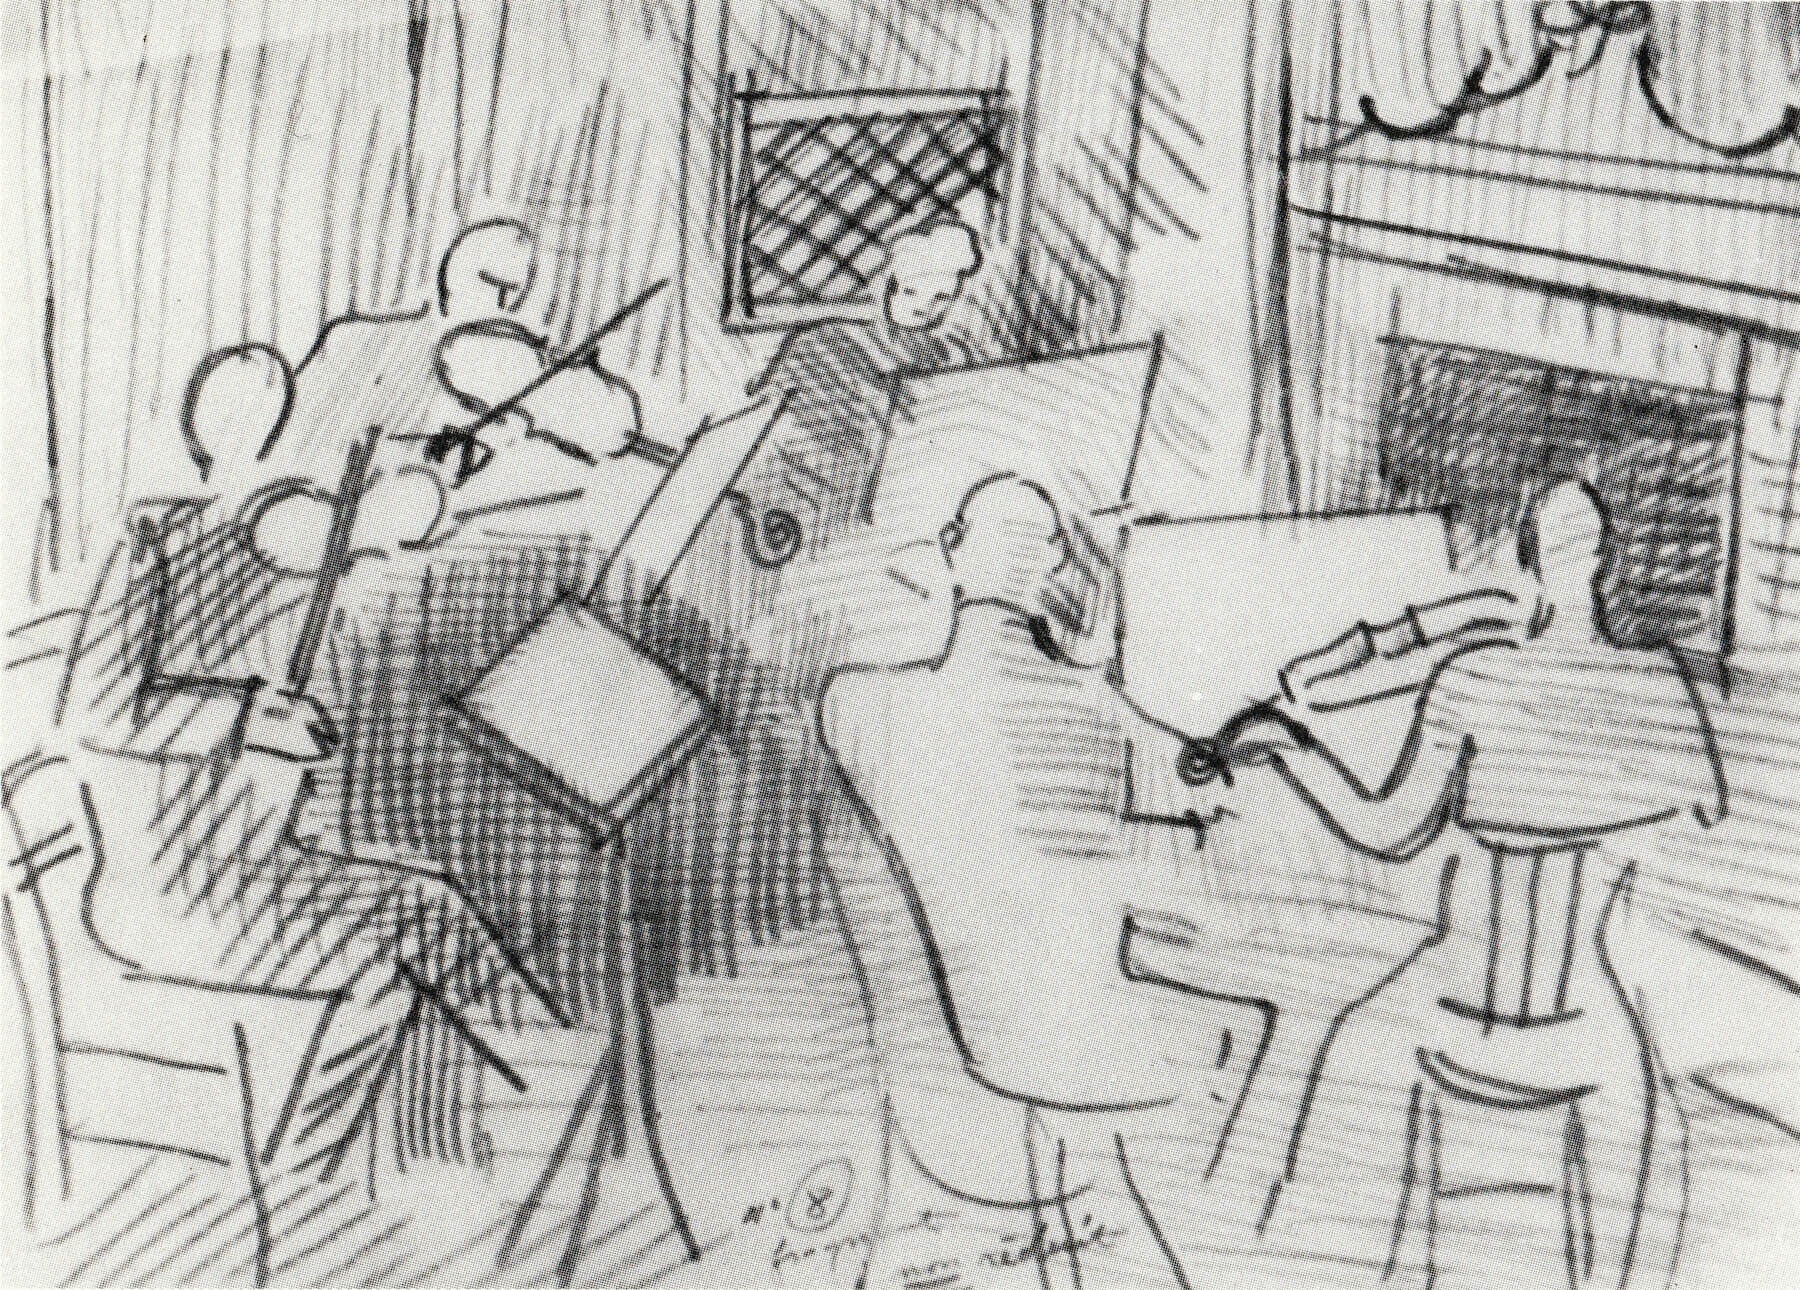 Raoul Dufy, Le Quintette, c.1941, pencil, 25 x 34 cm, 9 ⅞ x 13 ⅜ inches